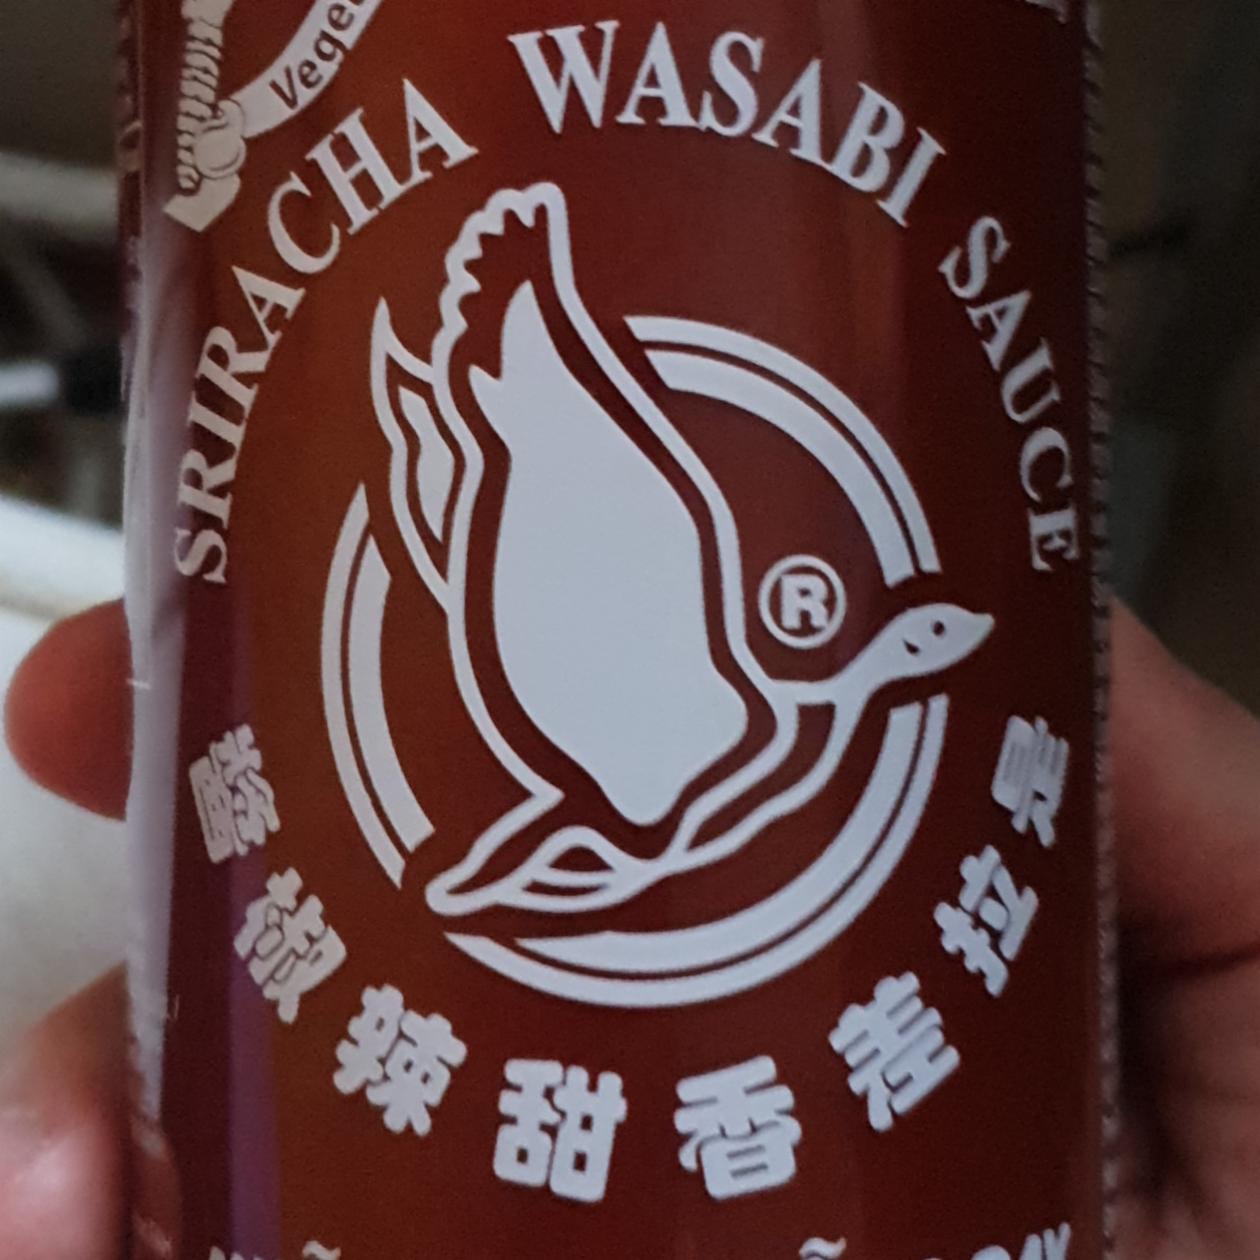 Fotografie - Sriracha wasabi sauce